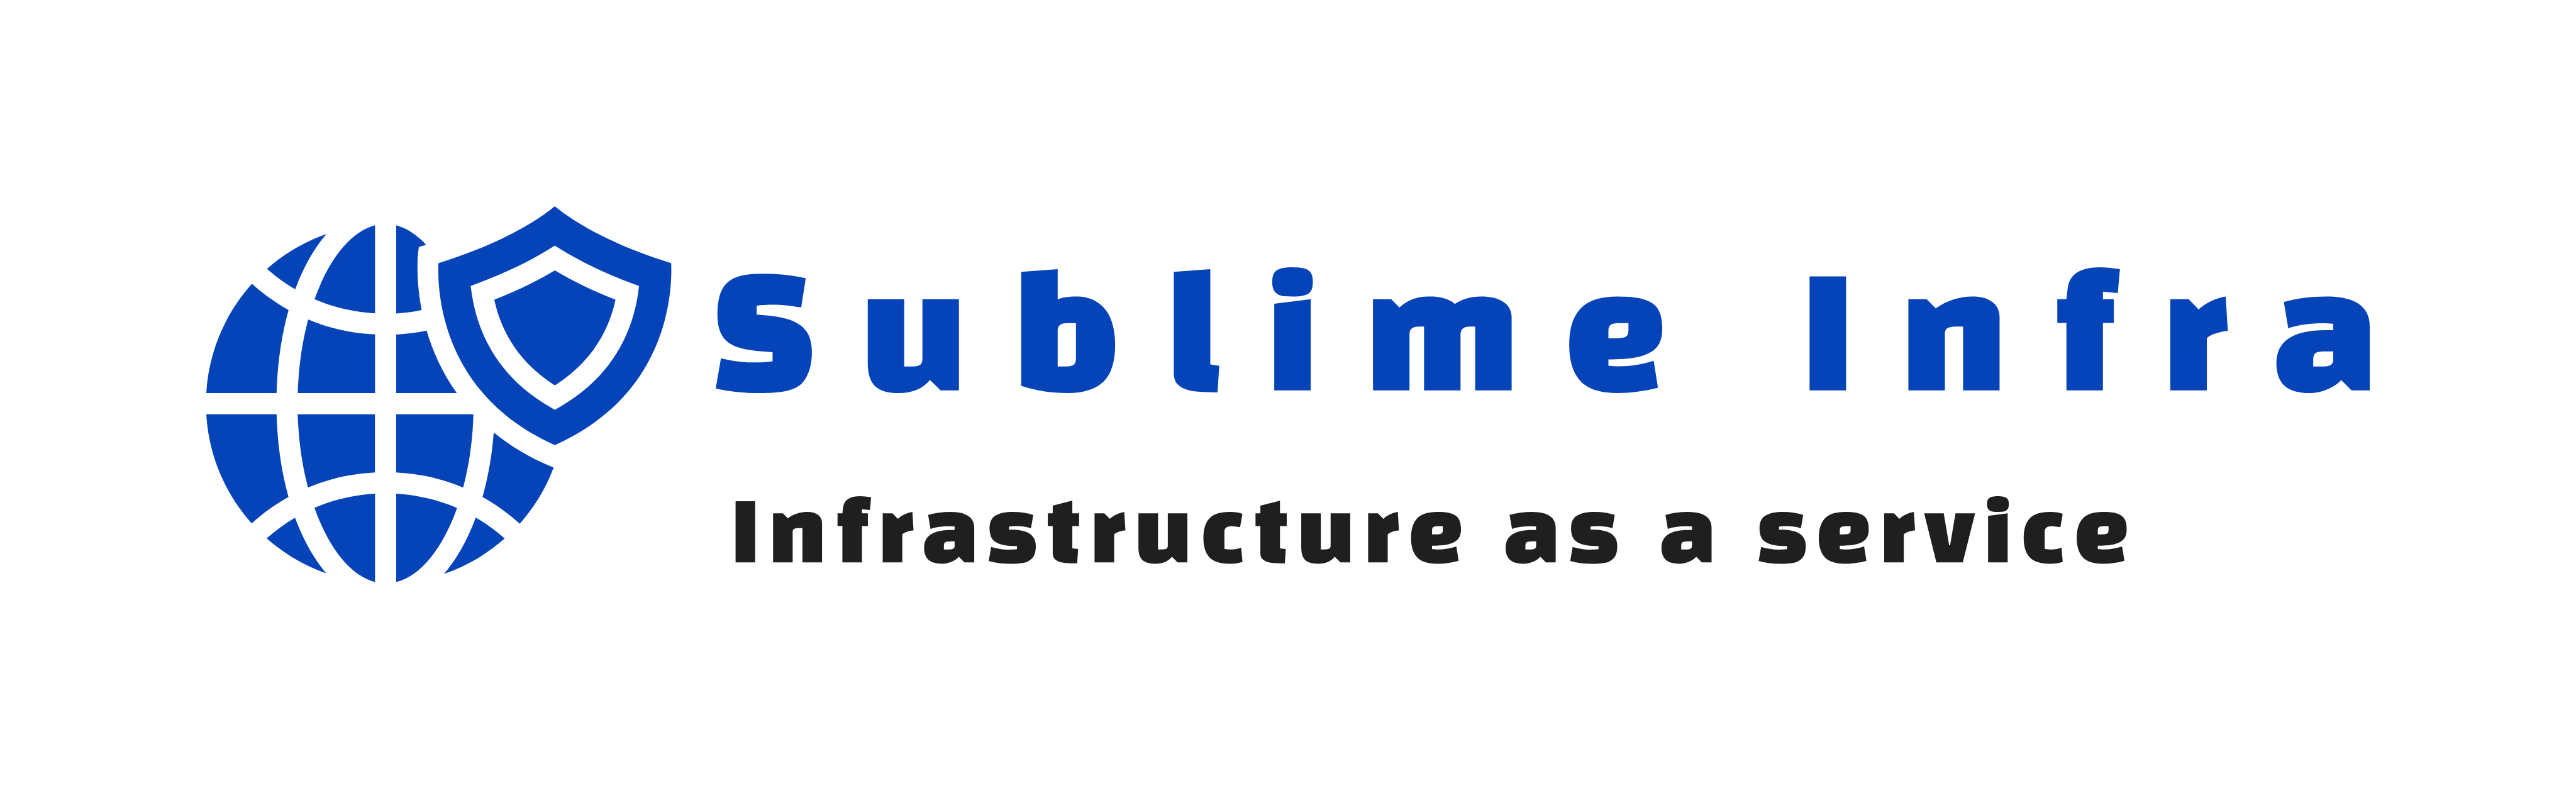 Sublime infra logo